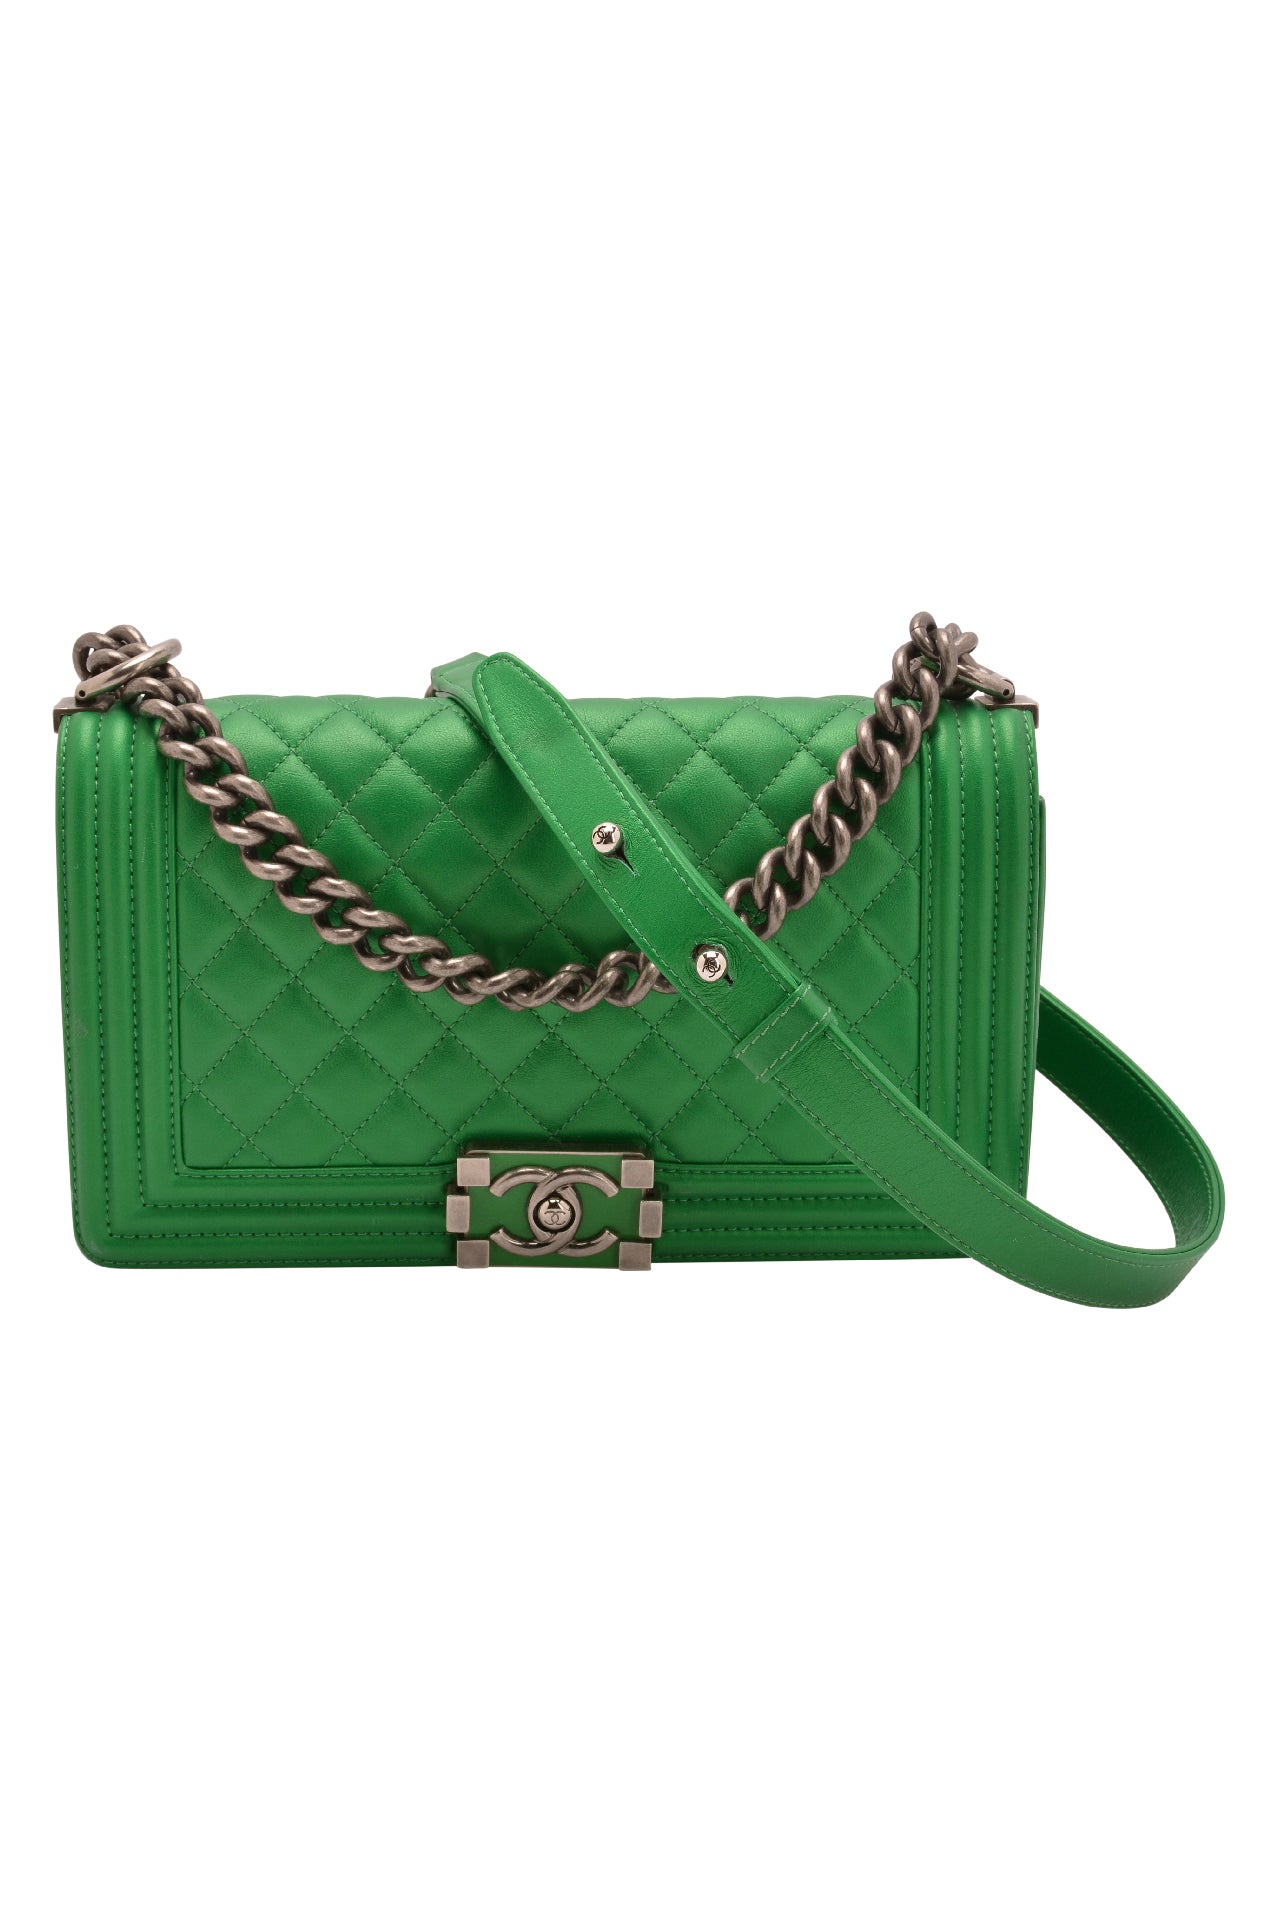 chanel light green bag